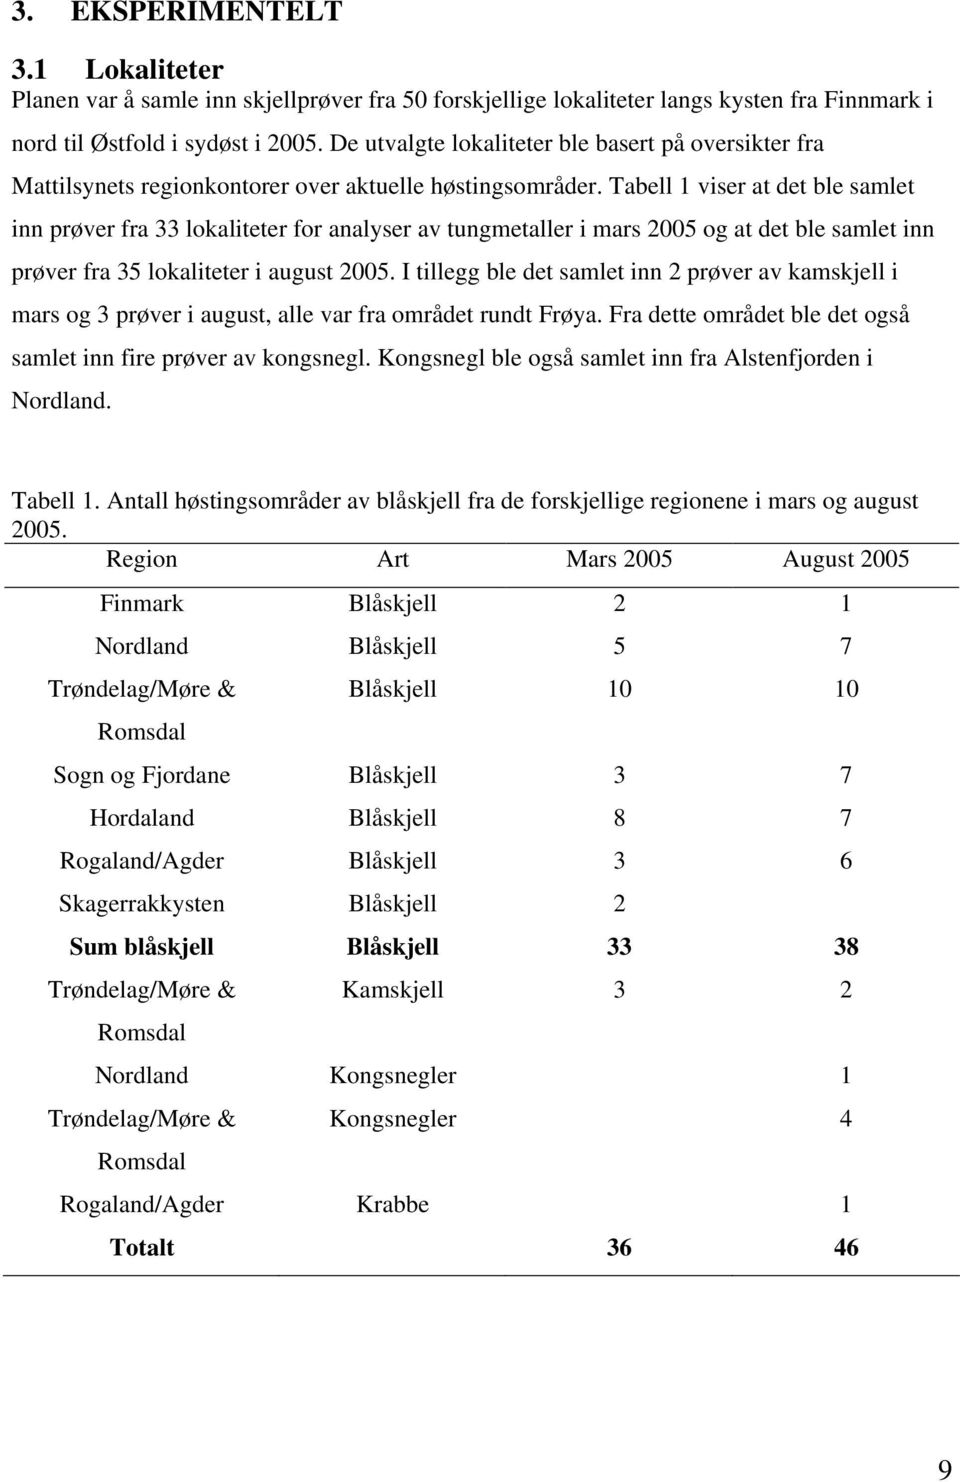 Tabell 1 viser at det ble samlet inn prøver fra 33 lokaliteter for analyser av tungmetaller i mars 2005 og at det ble samlet inn prøver fra 35 lokaliteter i august 2005.